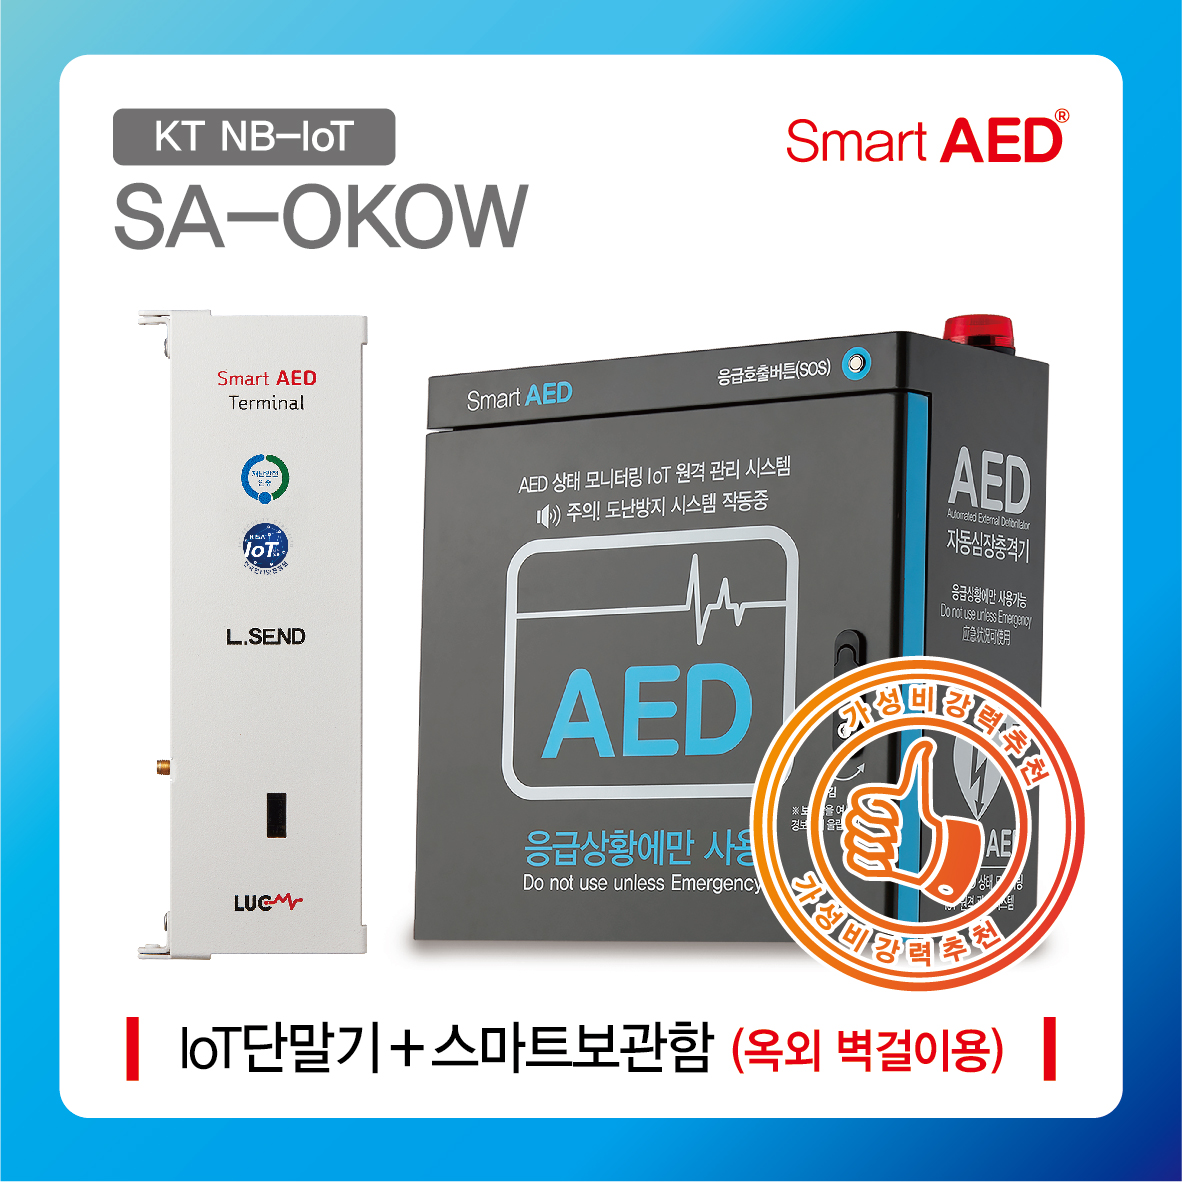 [ SA-OKOW ] 스마트 AED 통합모니터링 장치 및 보관함 (옥외 벽걸이형)